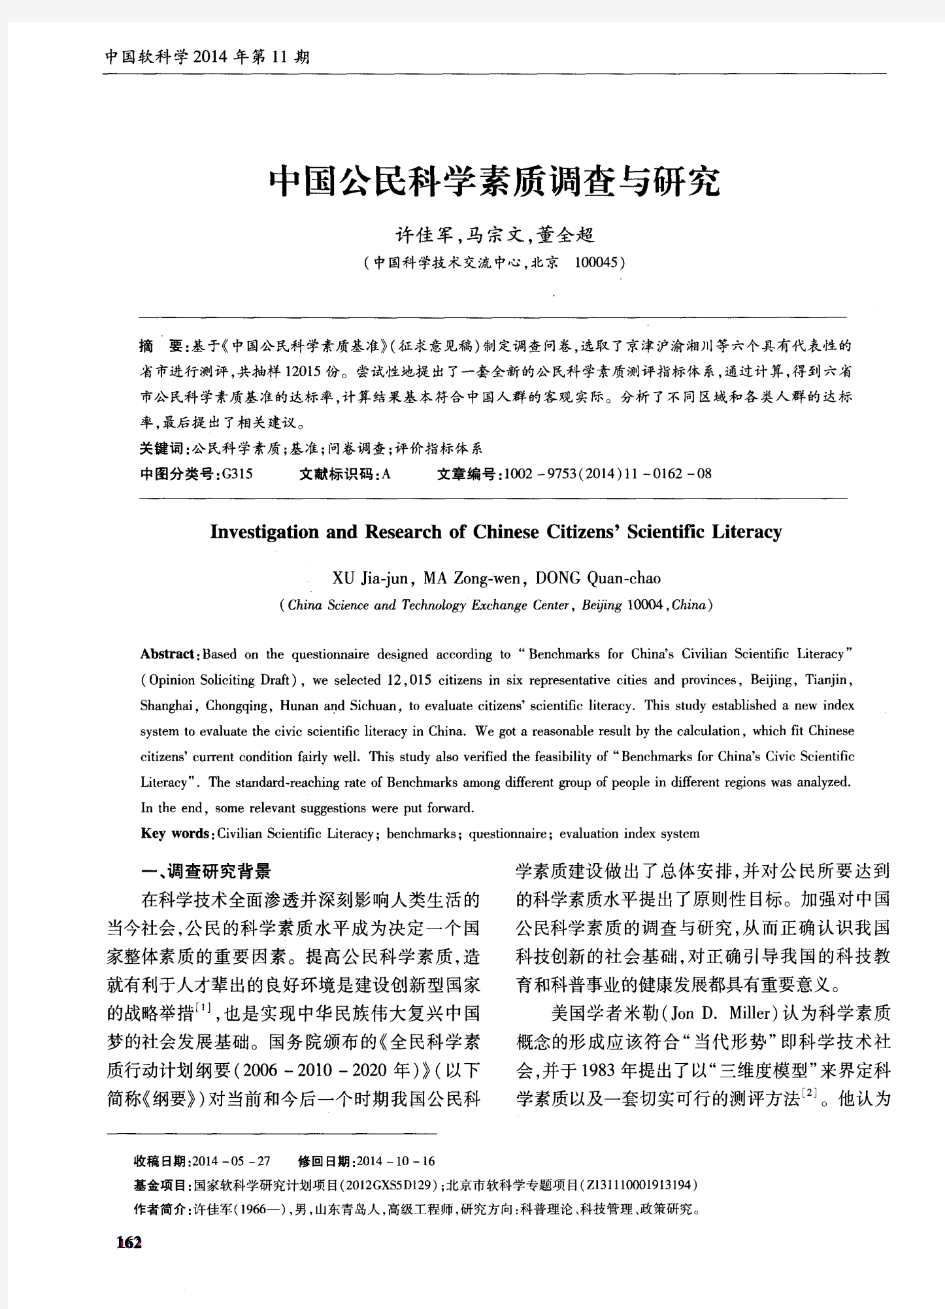 中国公民科学素质调查与研究